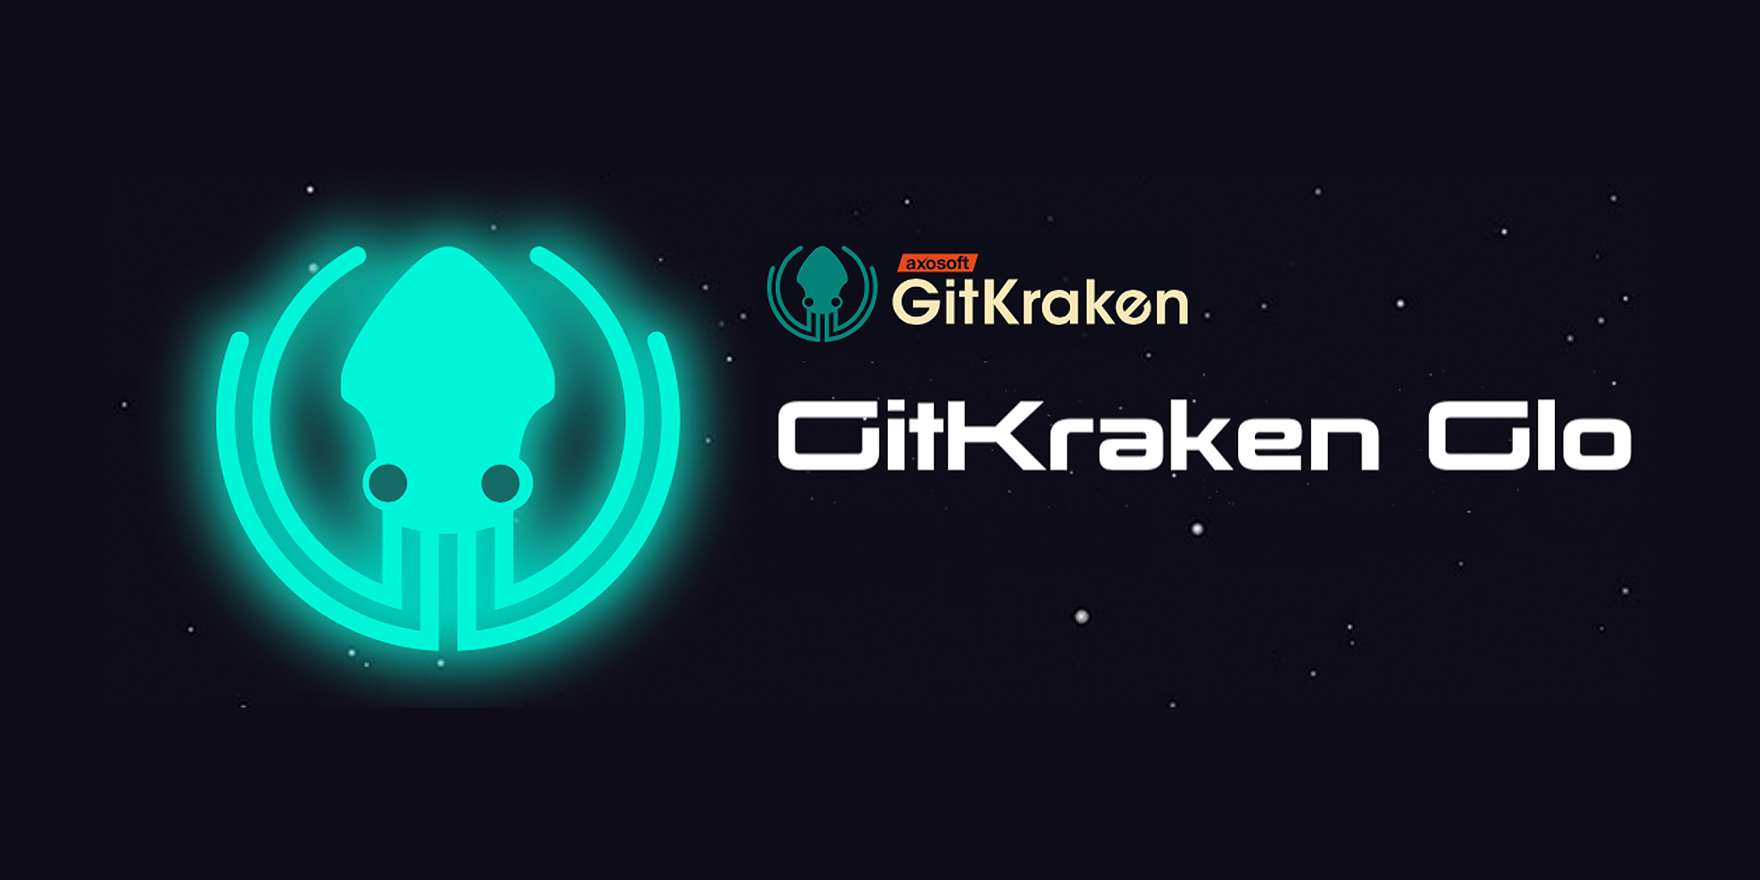 Learn more about GitKraken Glo Boards